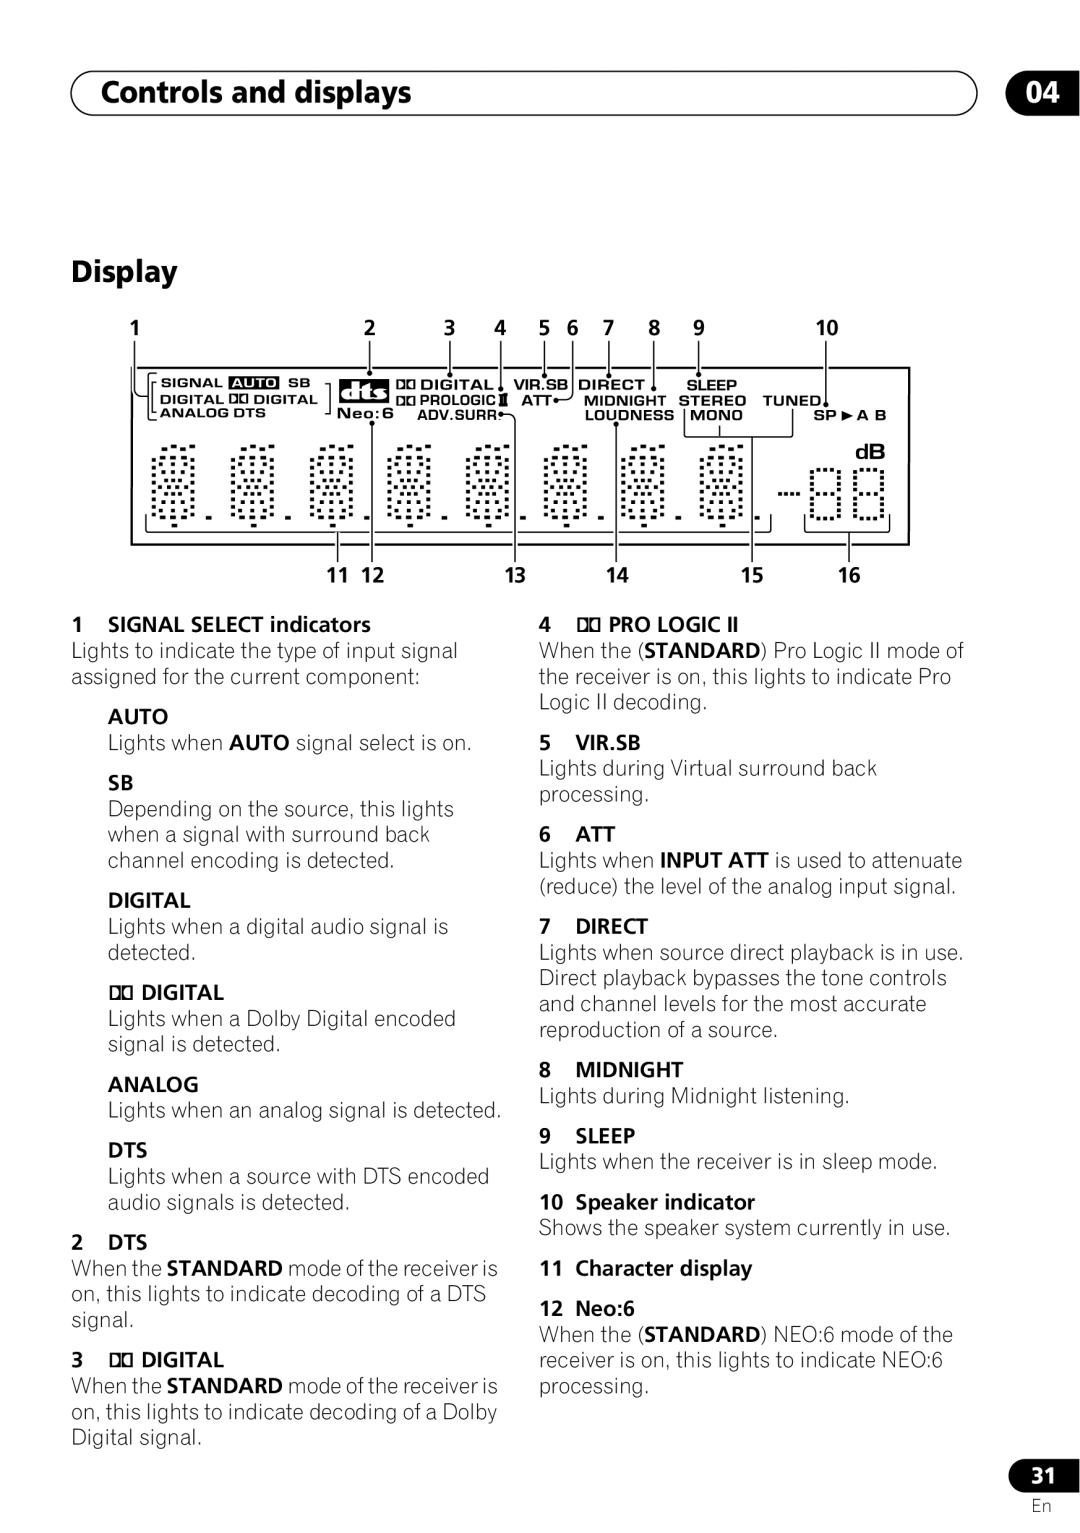 Pioneer VSX-D712 manual Display, Controls and displays 